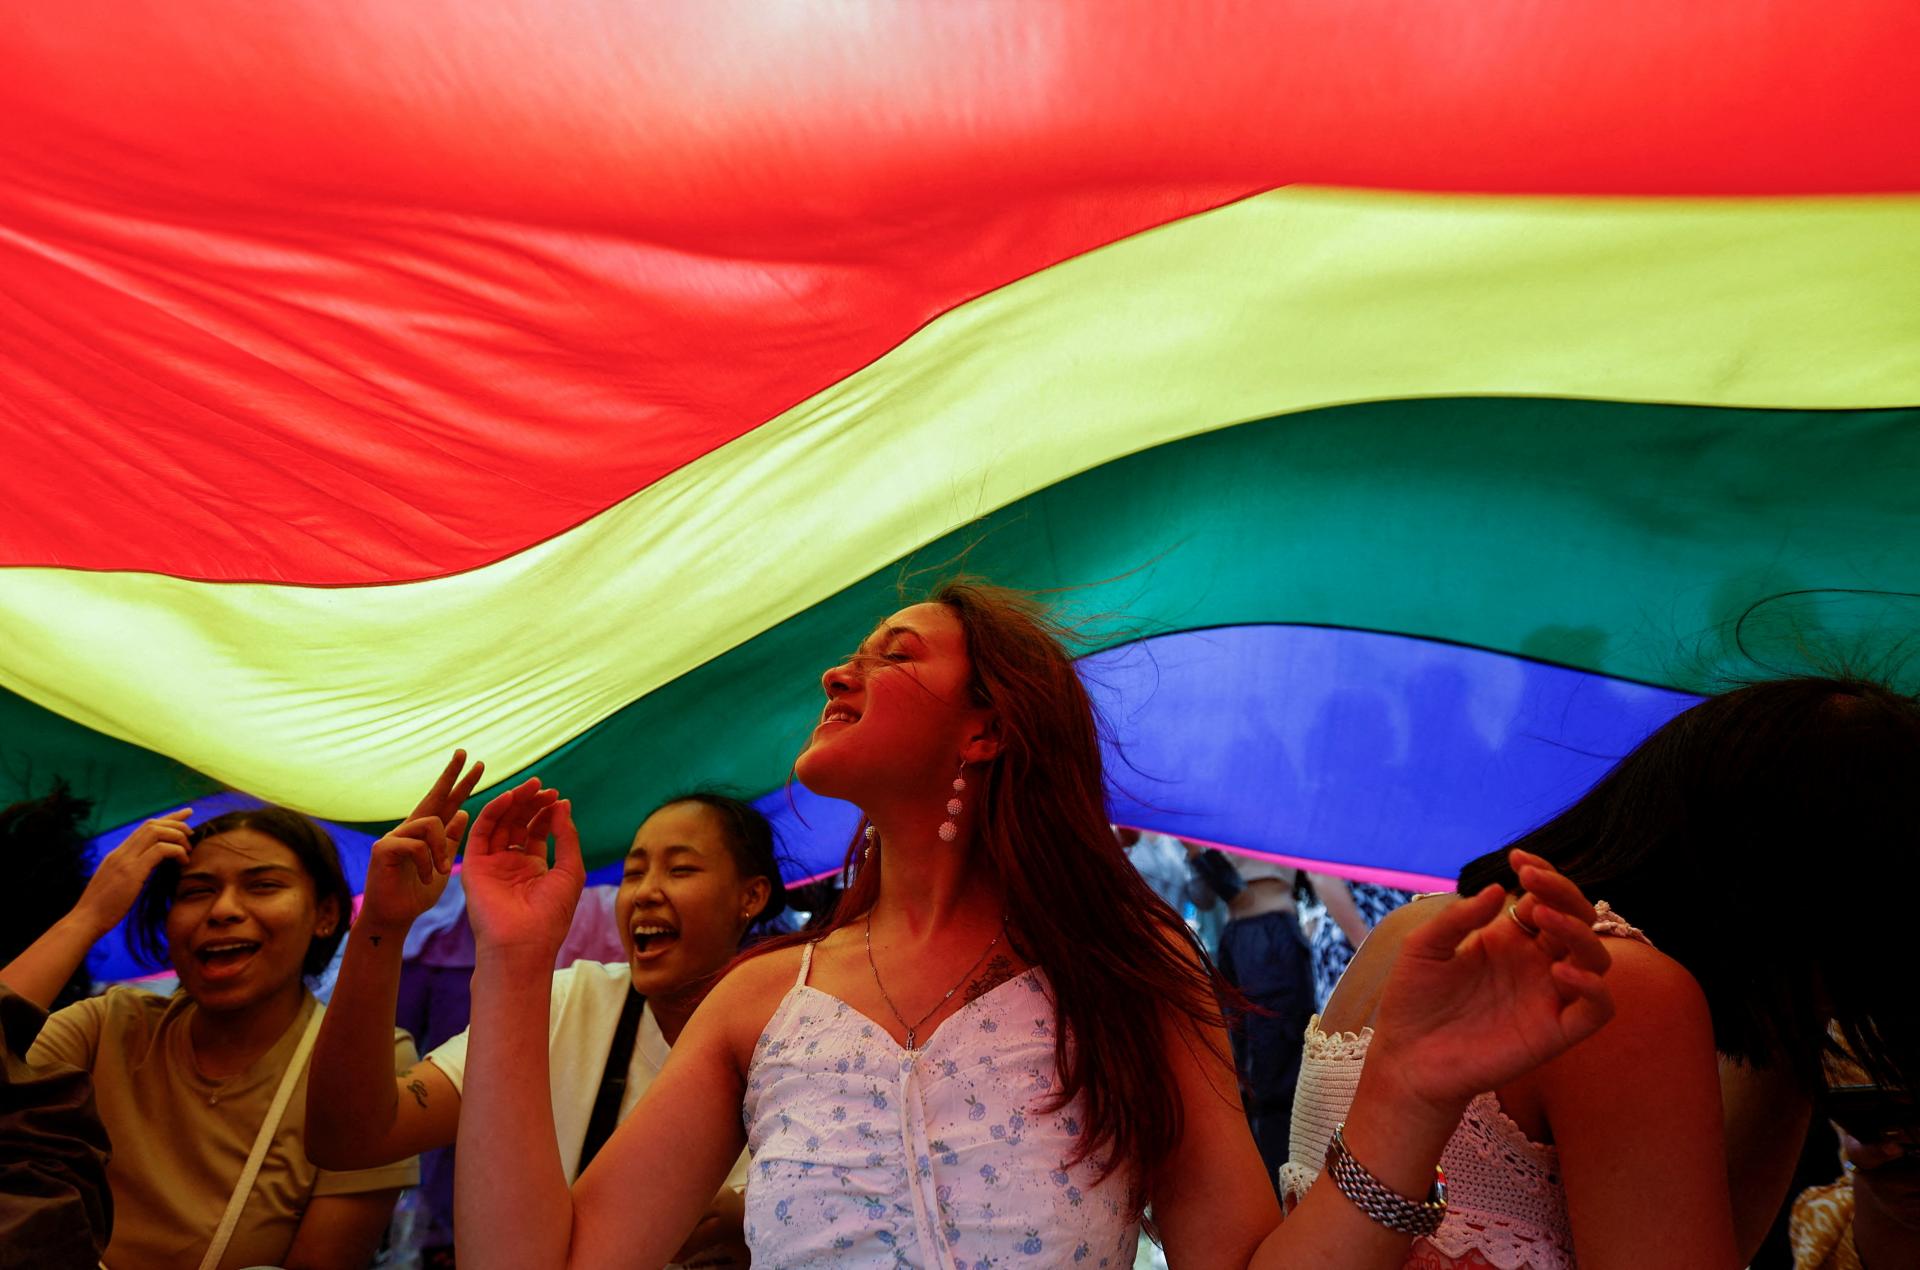 Poľsko by malo uznať partnerstvá homosexuálov, odporúča Európsky súd pre ľudské práva 